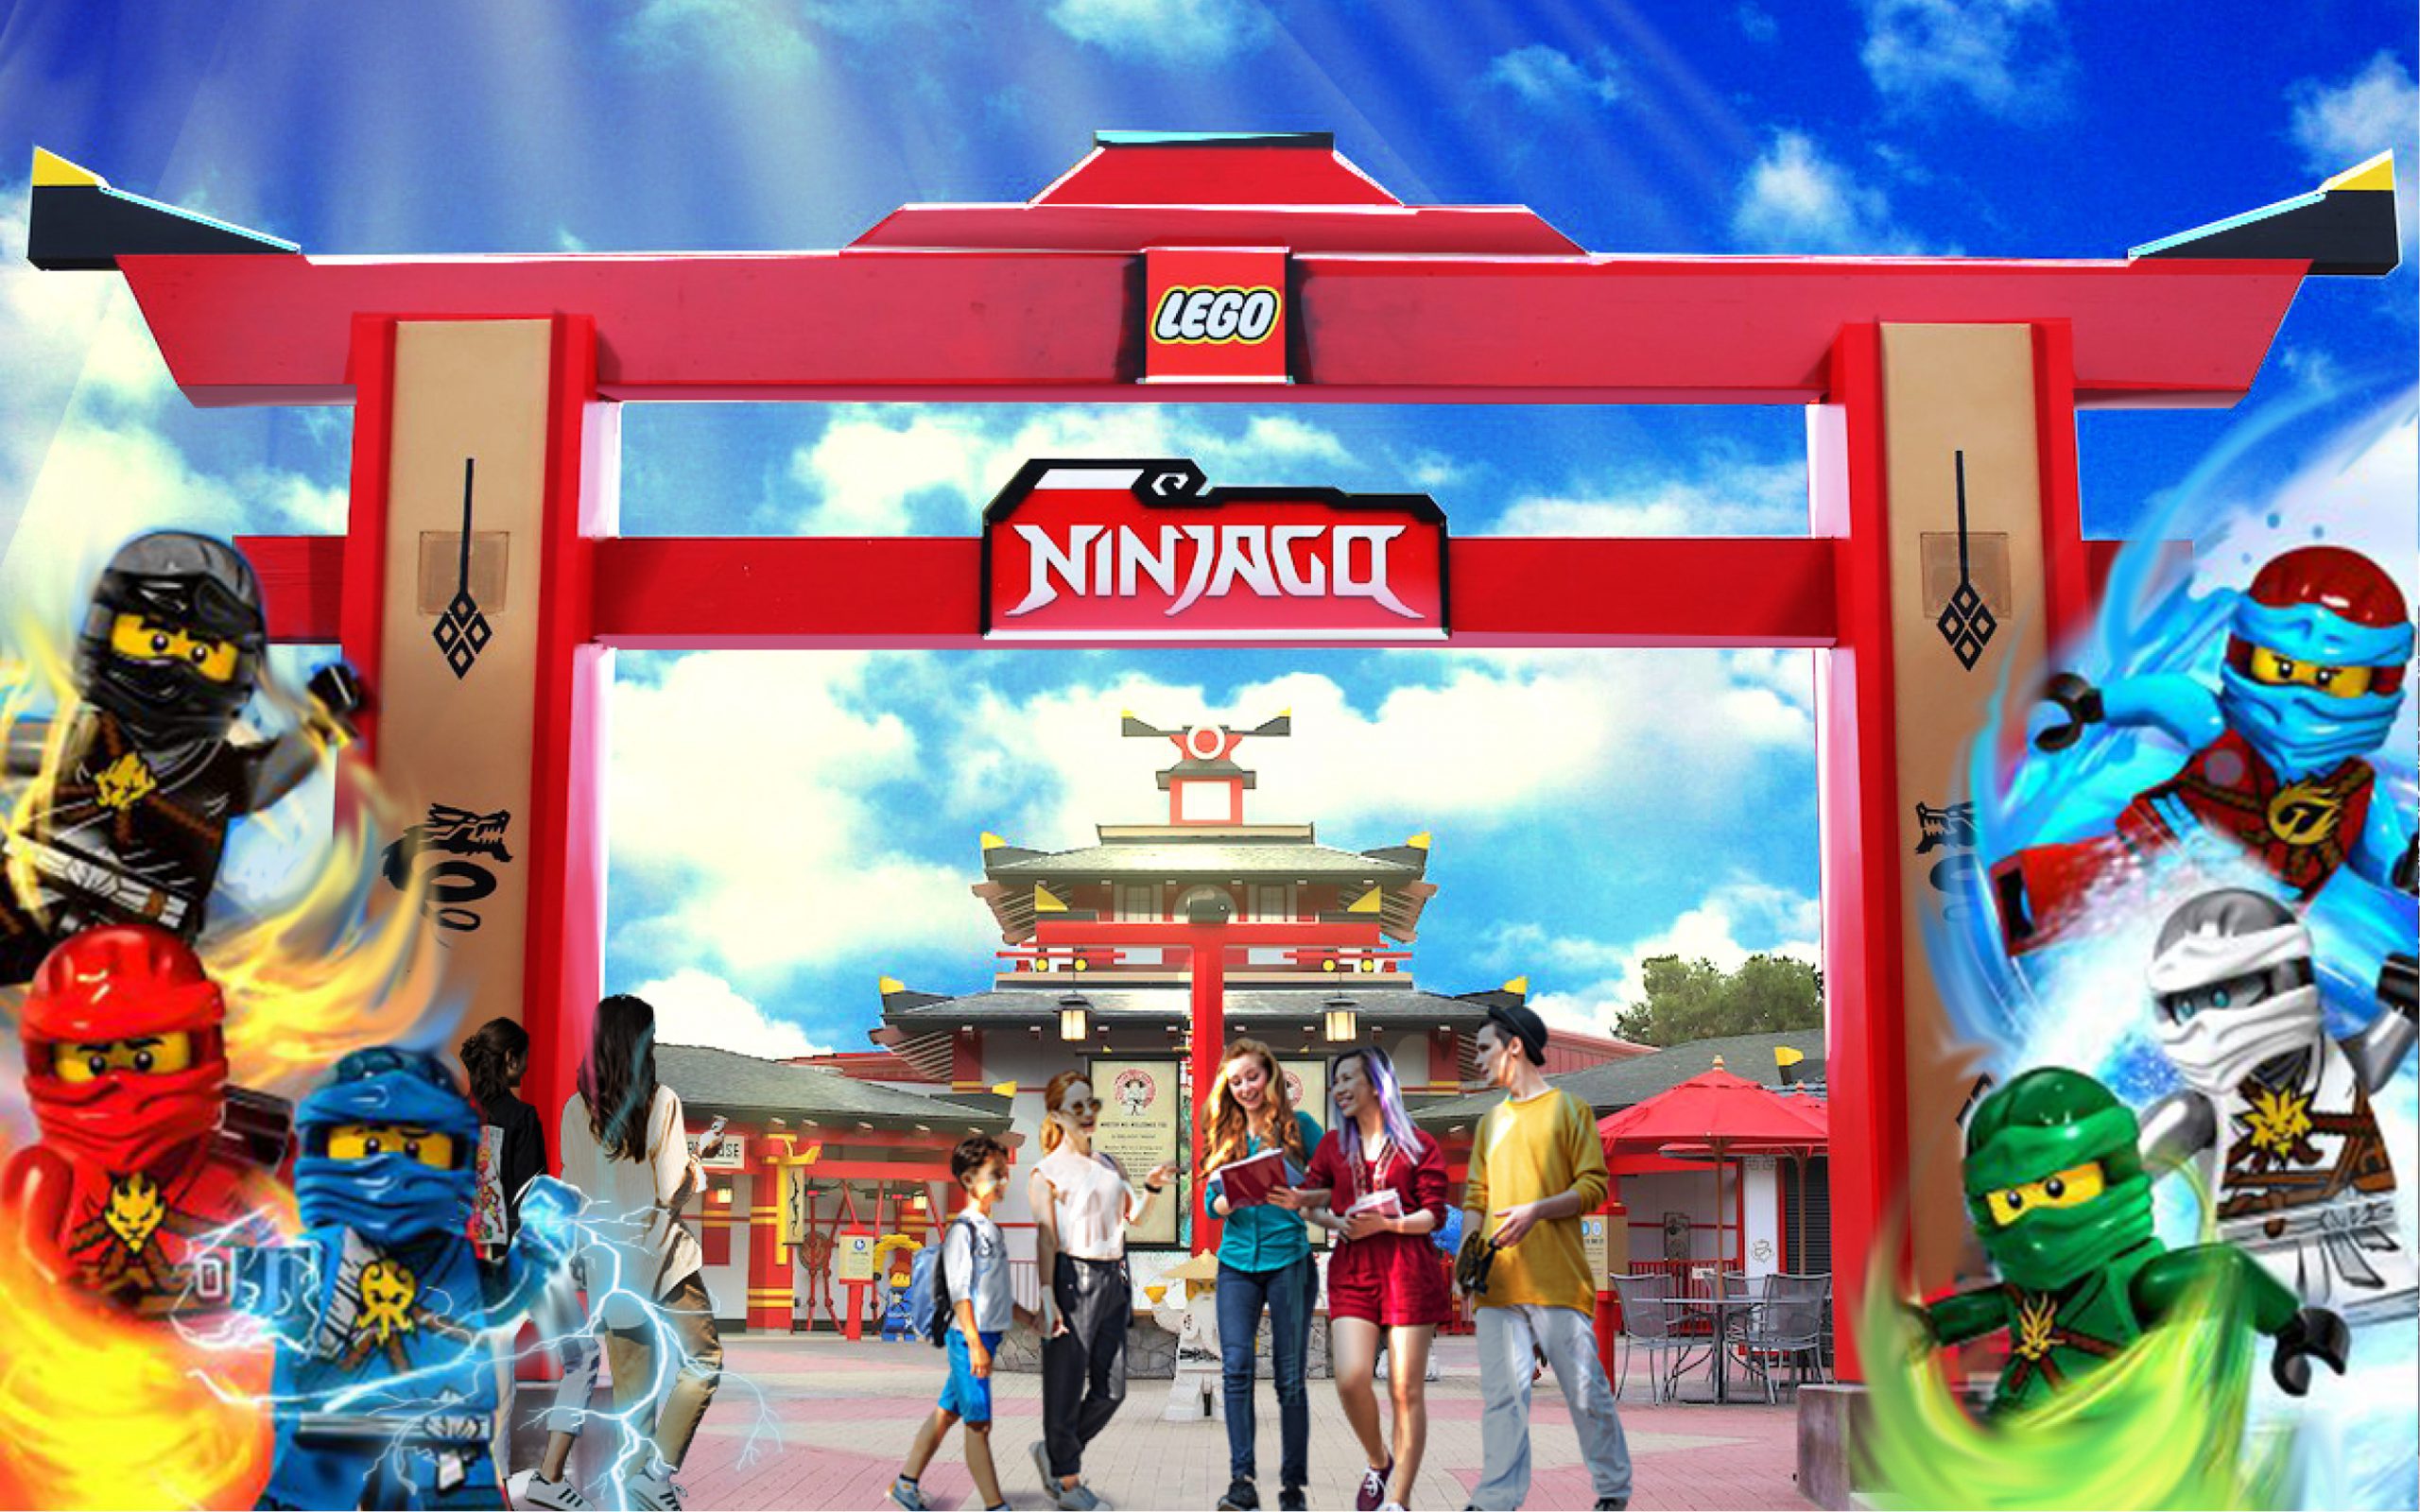 Concept image of outside a LEGO Ninjago ride